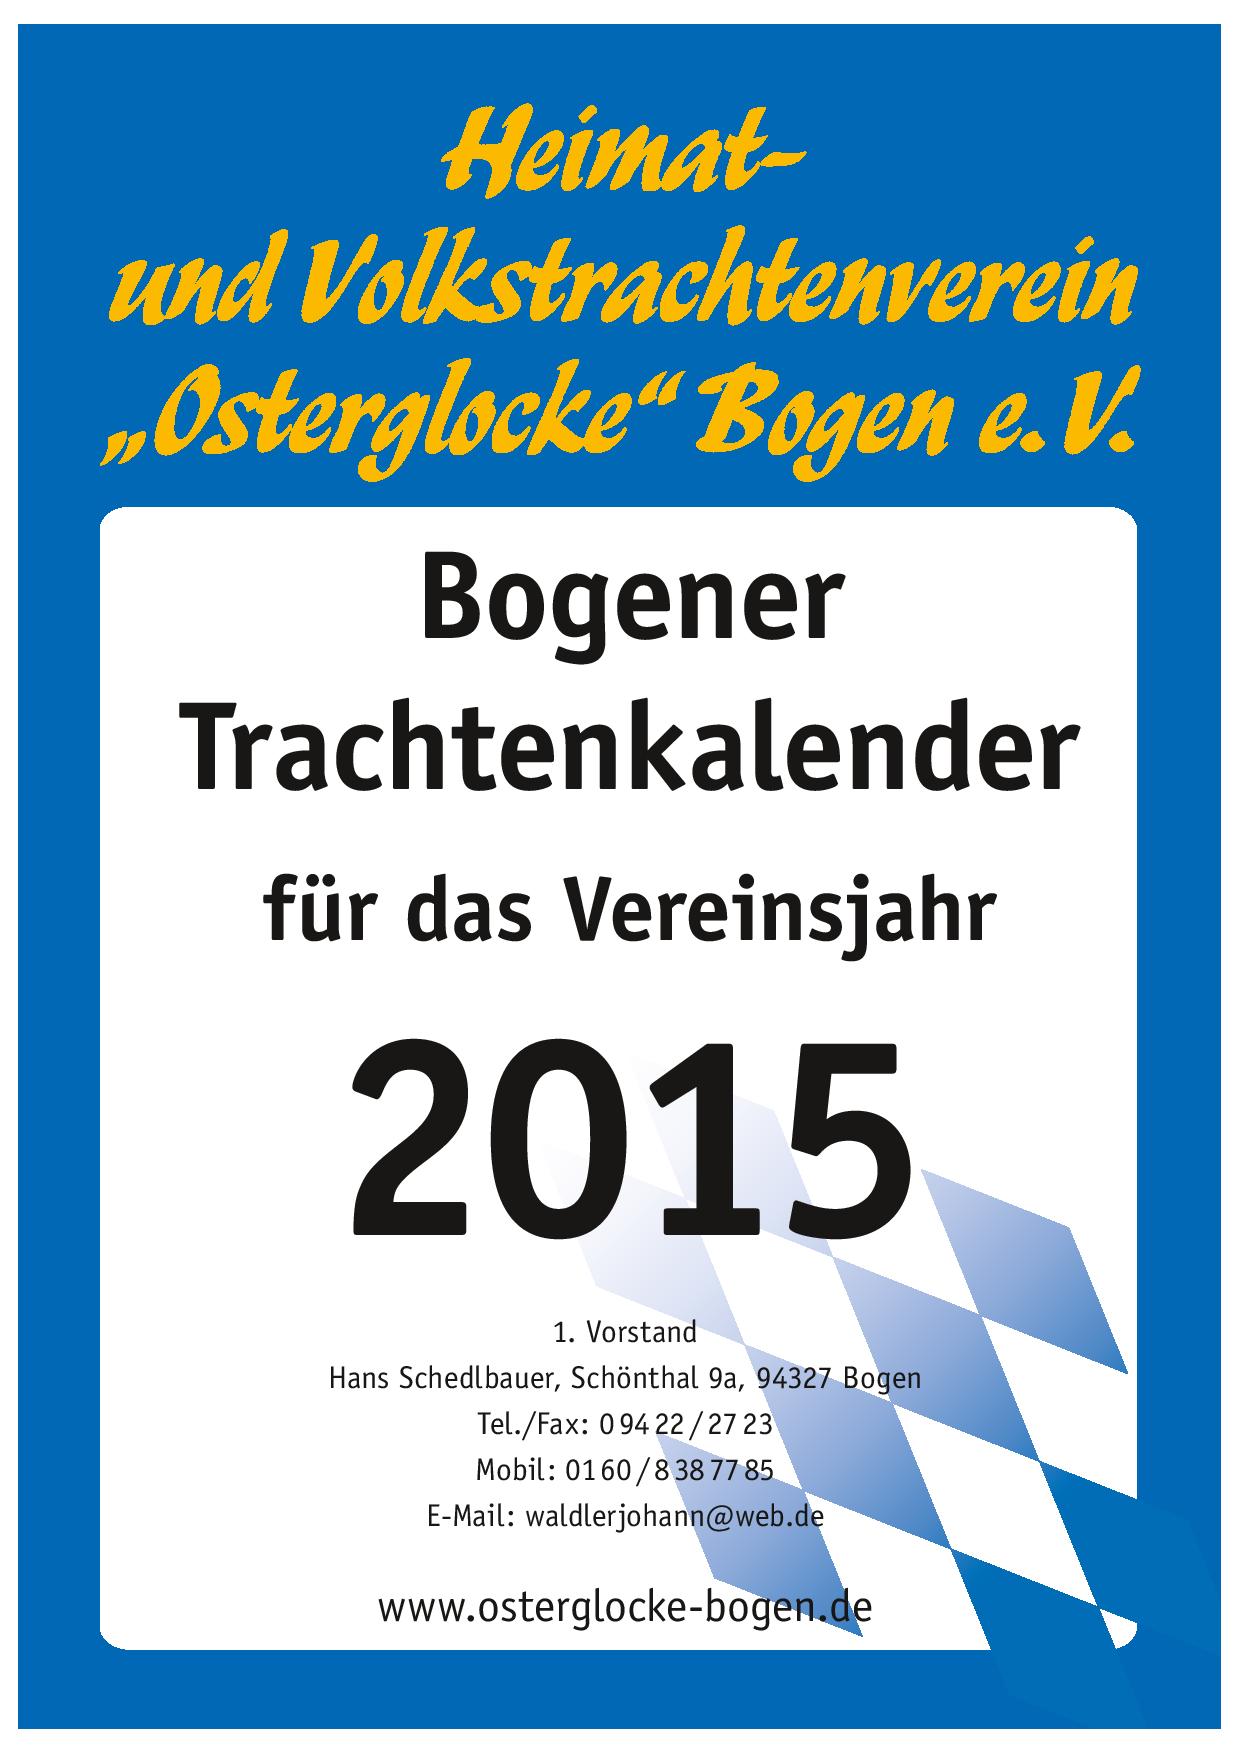 Bogener Trachtenkalender 2015 (Deckblatt)